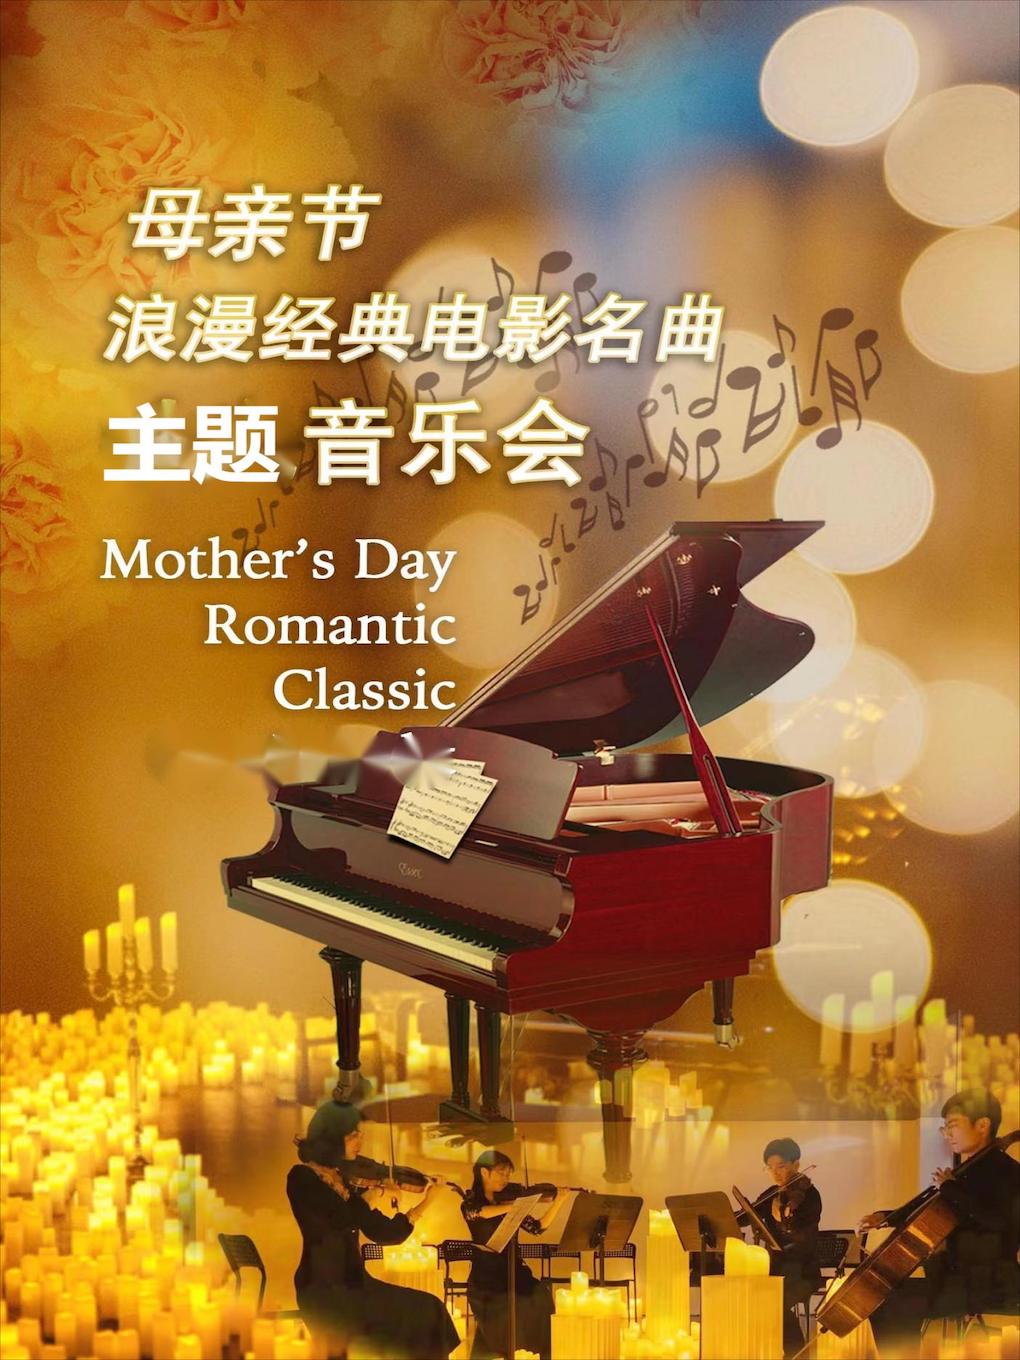 【北京】爱的致意——经典电影金曲母亲节音乐会